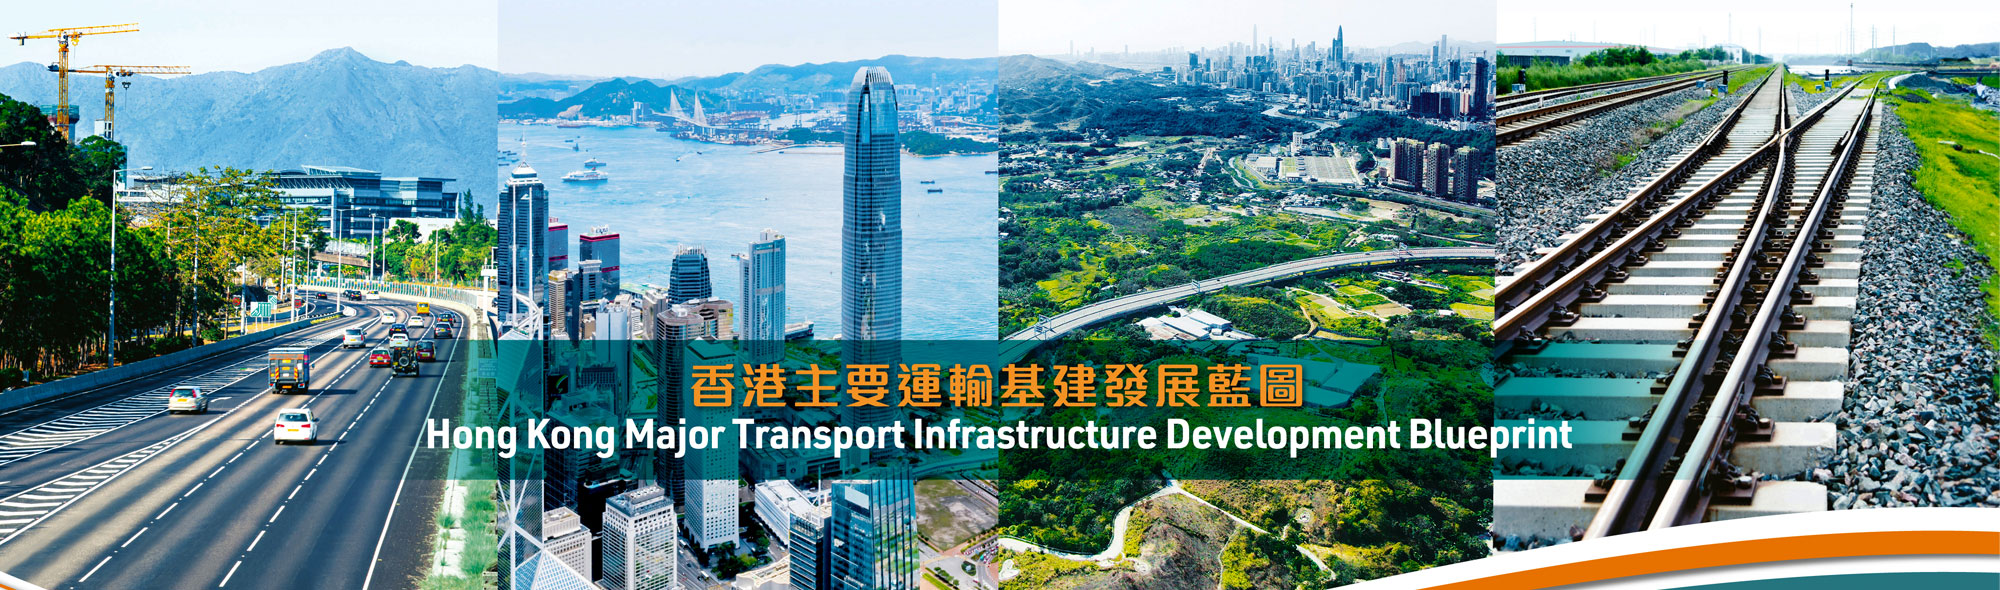 香港主要运输基建发展蓝图